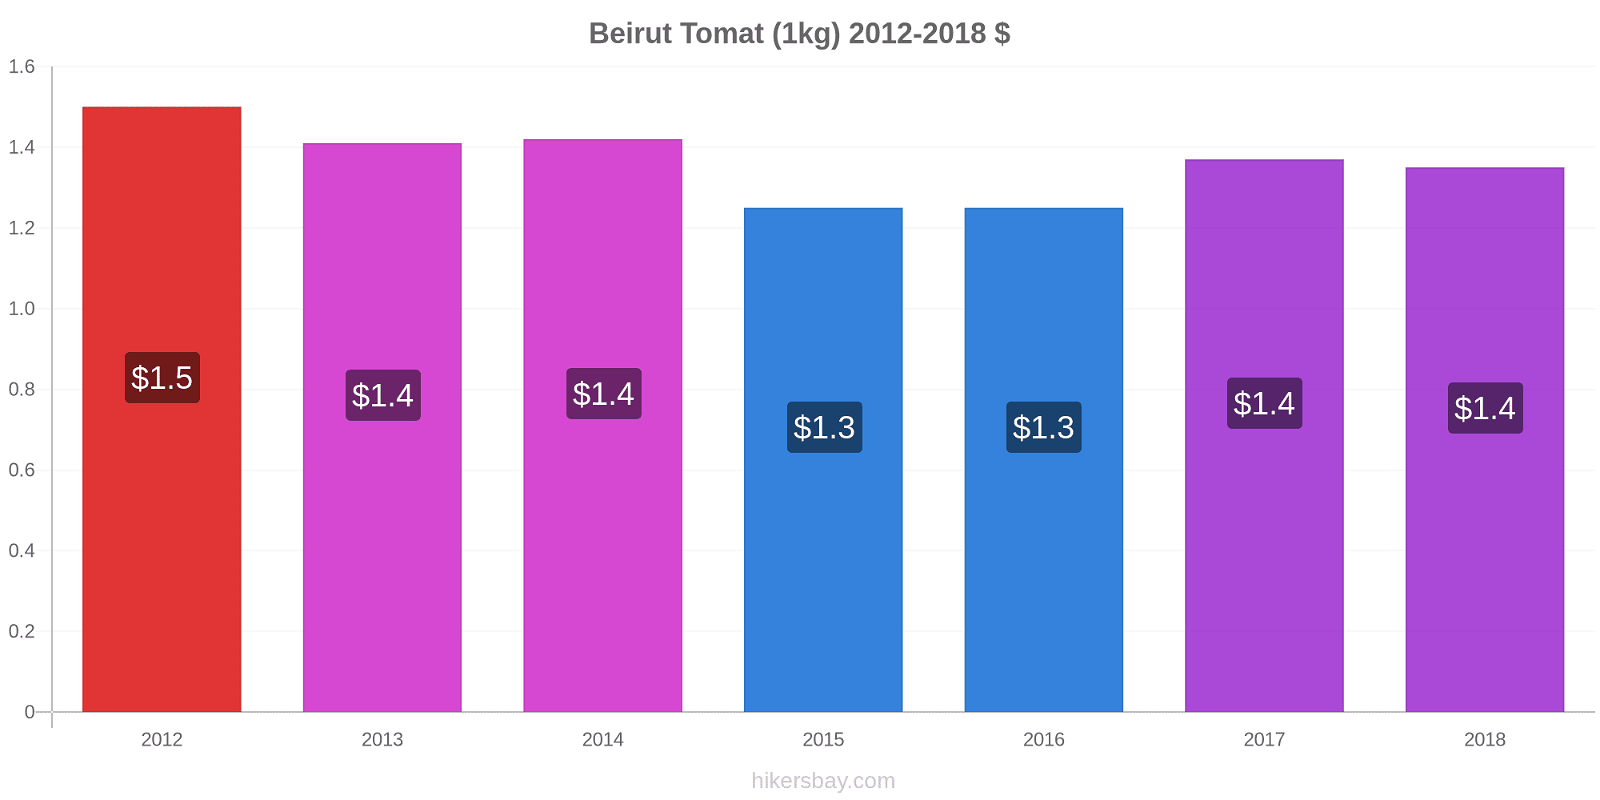 Beirut prisendringer Tomat (1kg) hikersbay.com